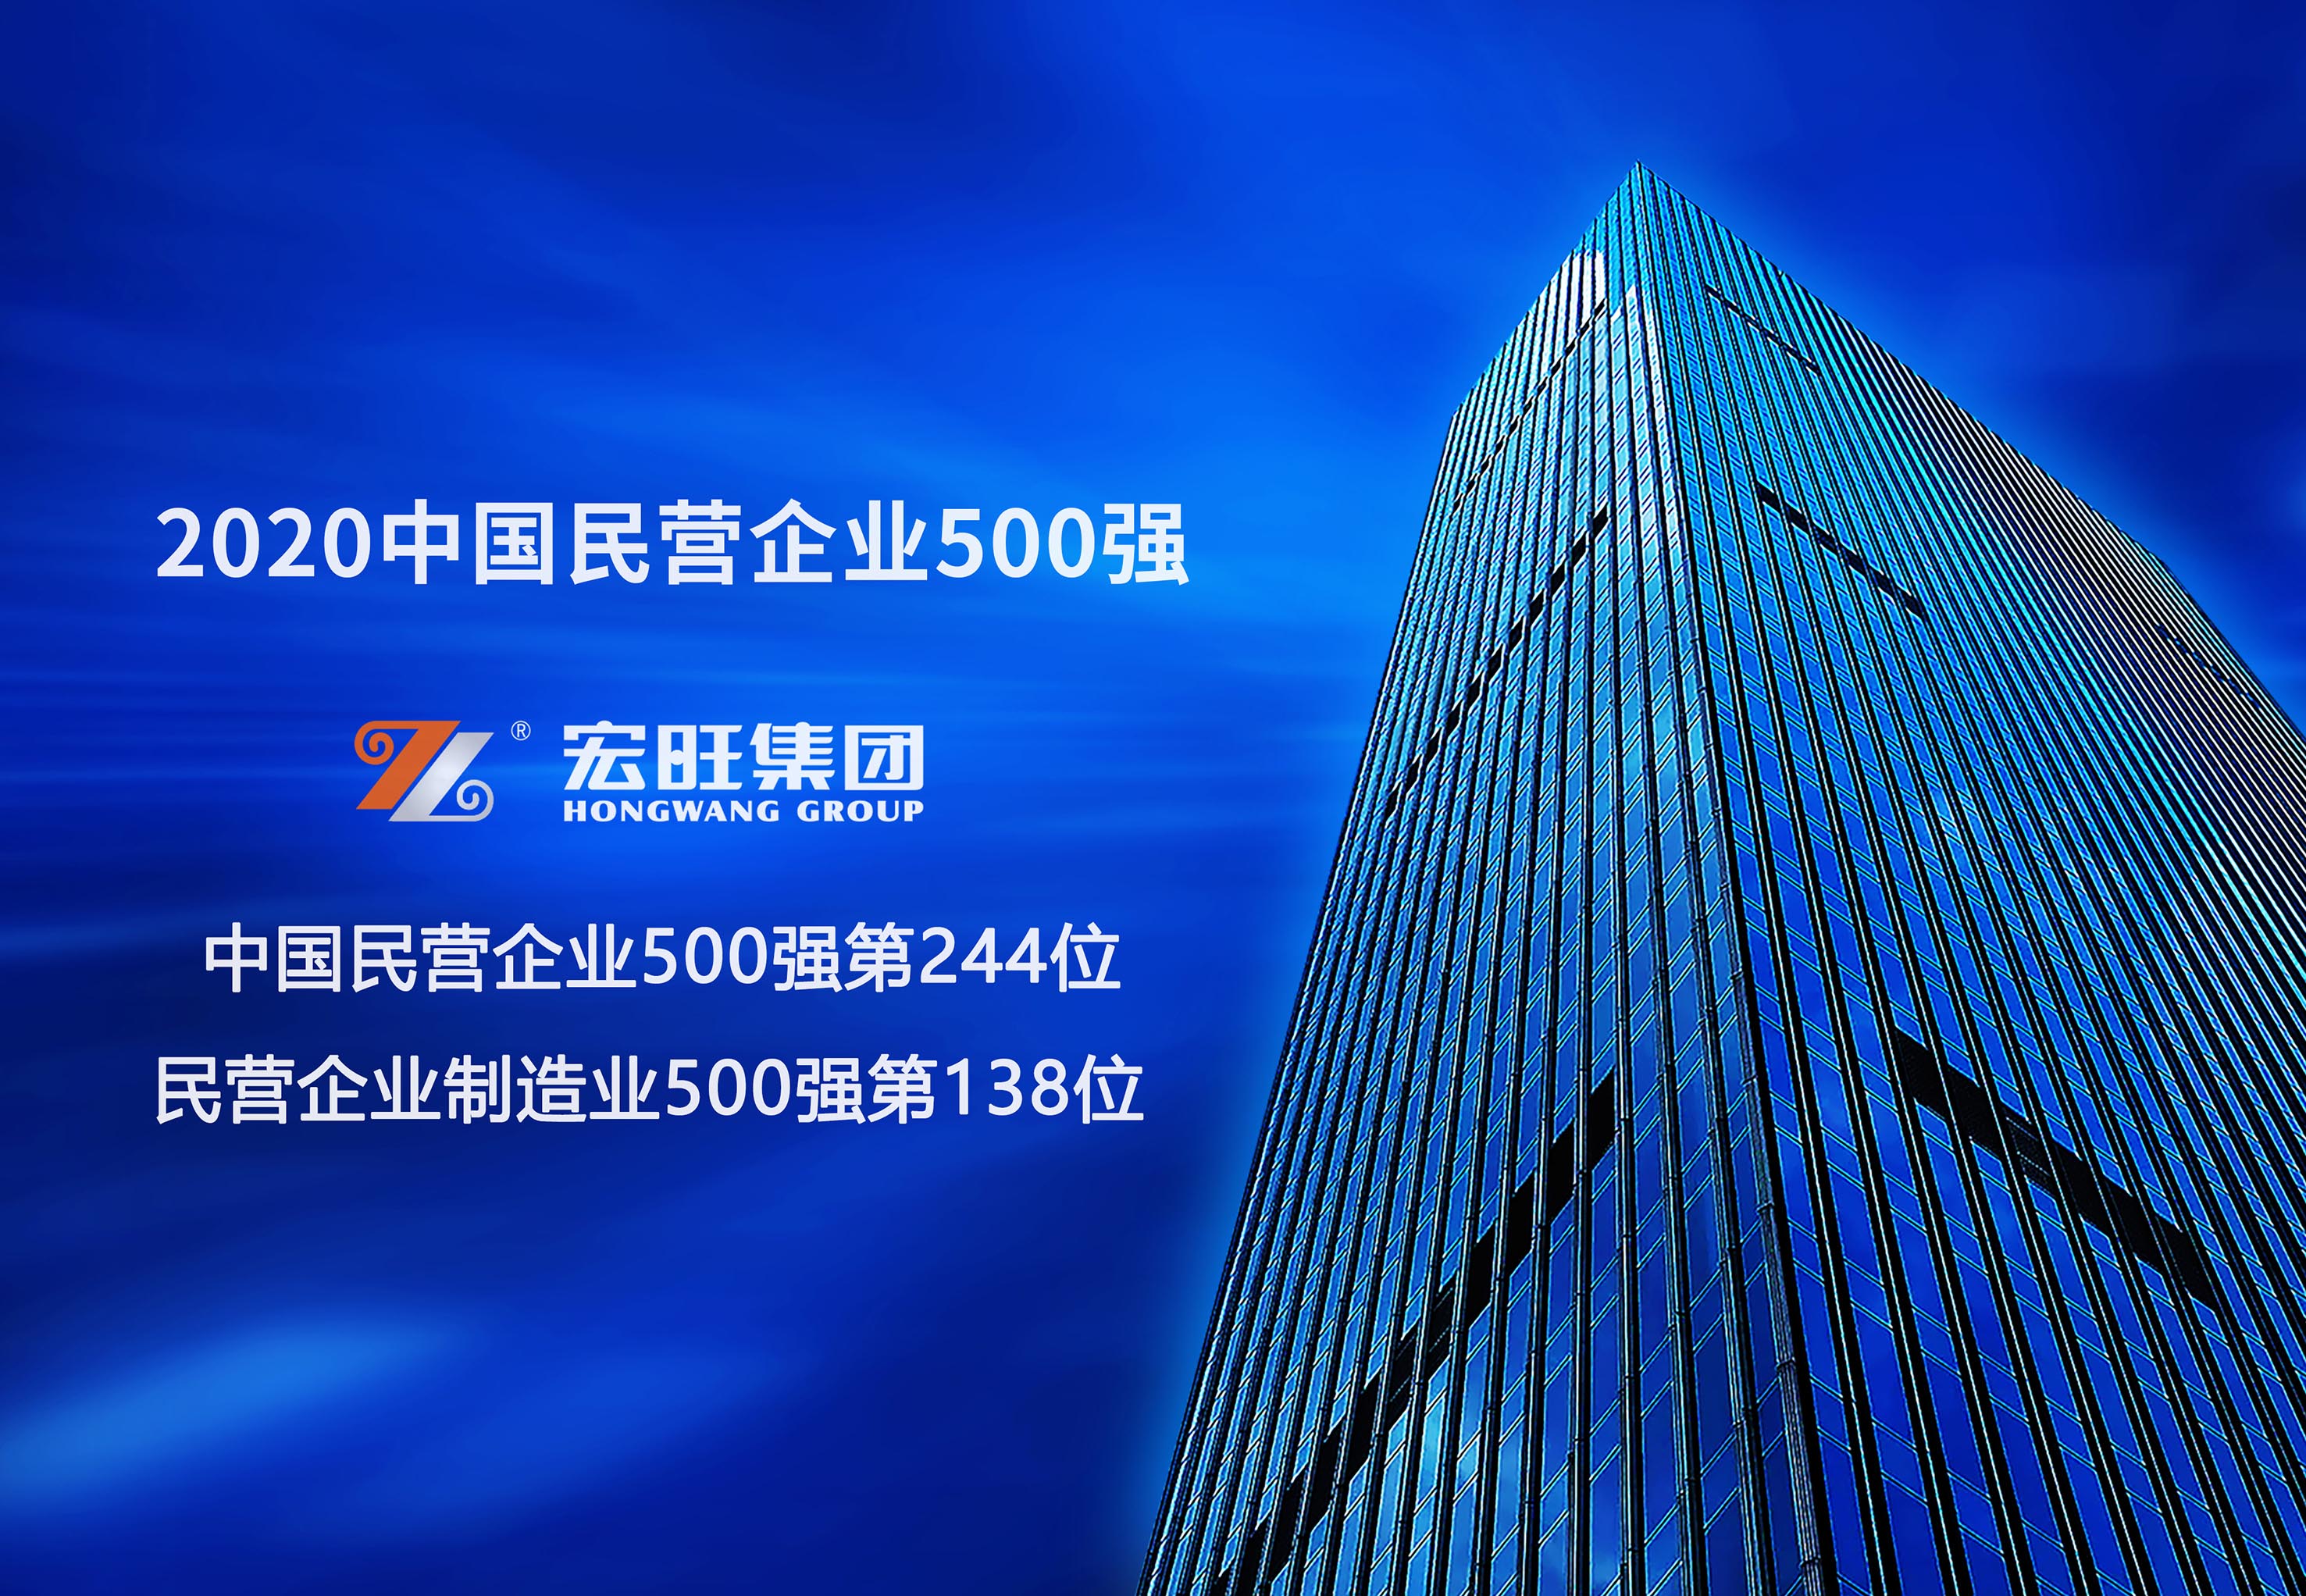 宏旺集团位列2020年中国民营企业500强第244位